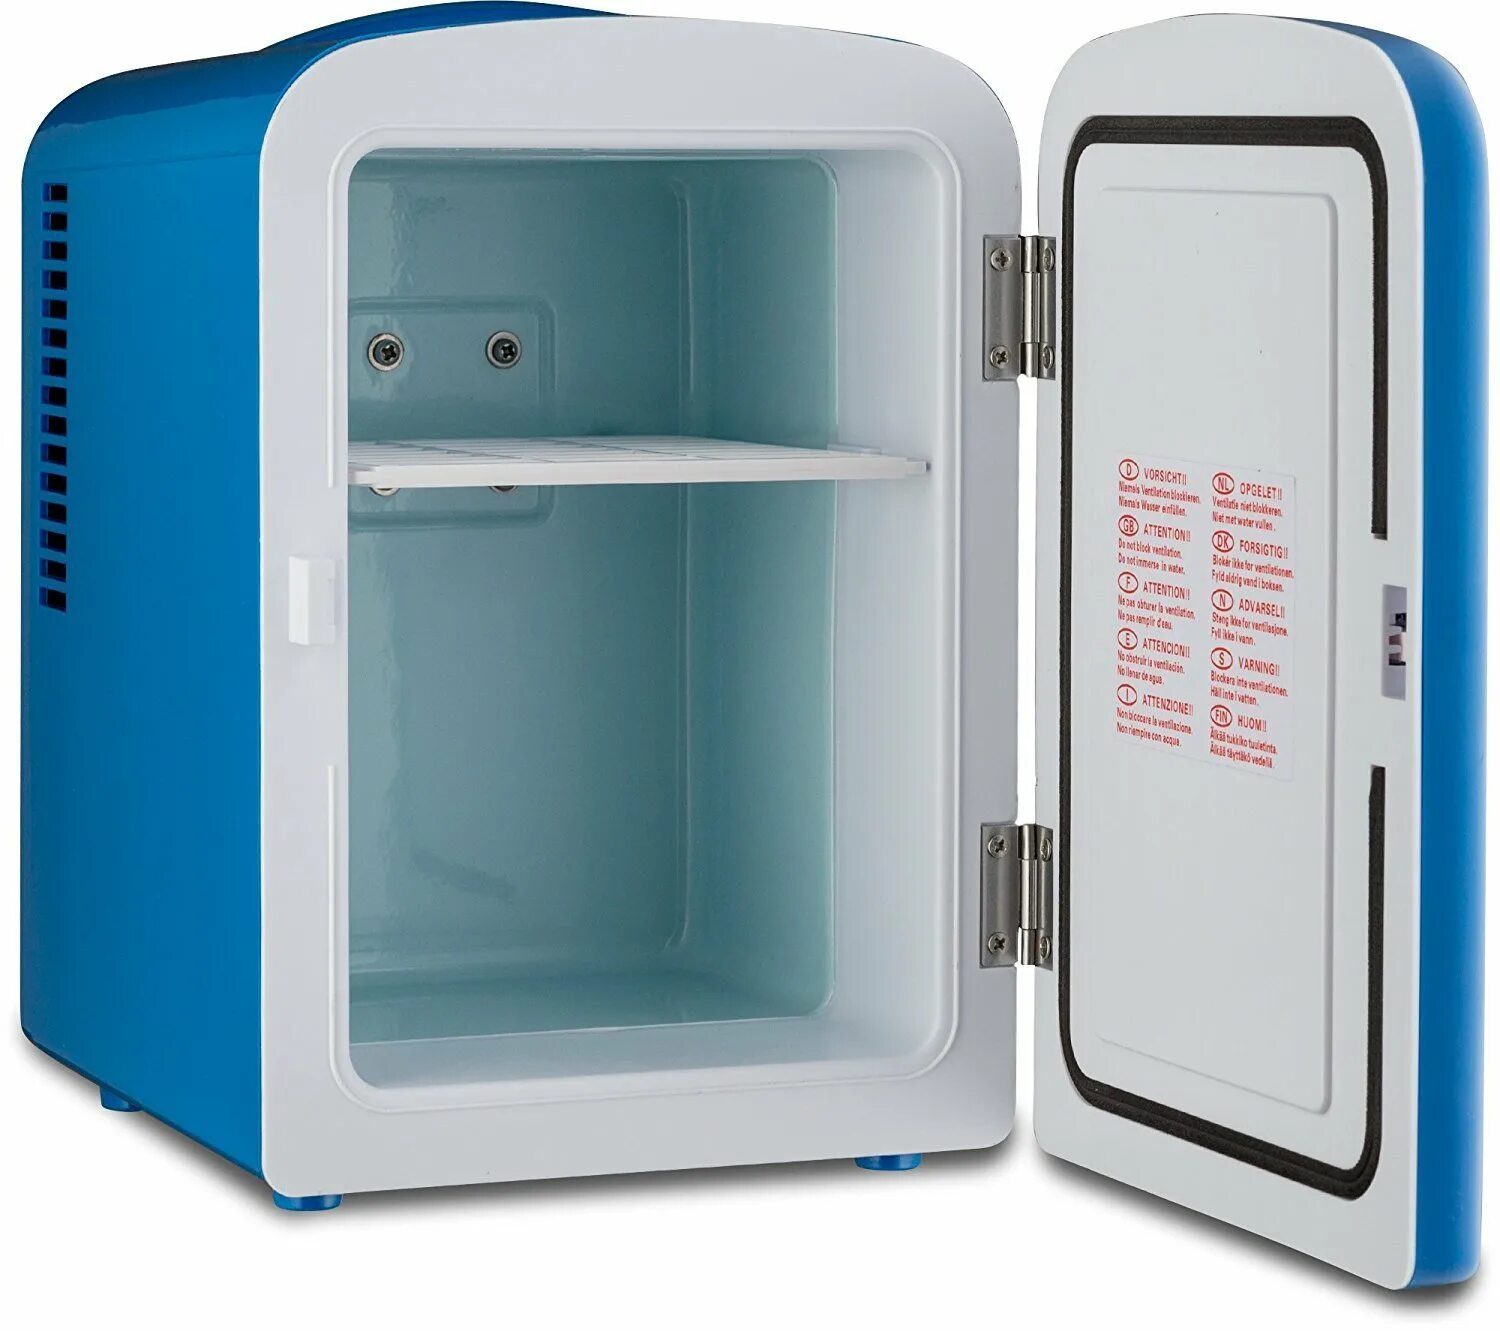 Мини-холодильник Baseus Igloo Mini Fridge for students (6l Cooler and Warmer)220v eu White. Мини холодильник Mini Fridge. Мини холодильник Pepsi. Мини холодильник SPX-0073e11a. Купить недорогой холодильник в санкт